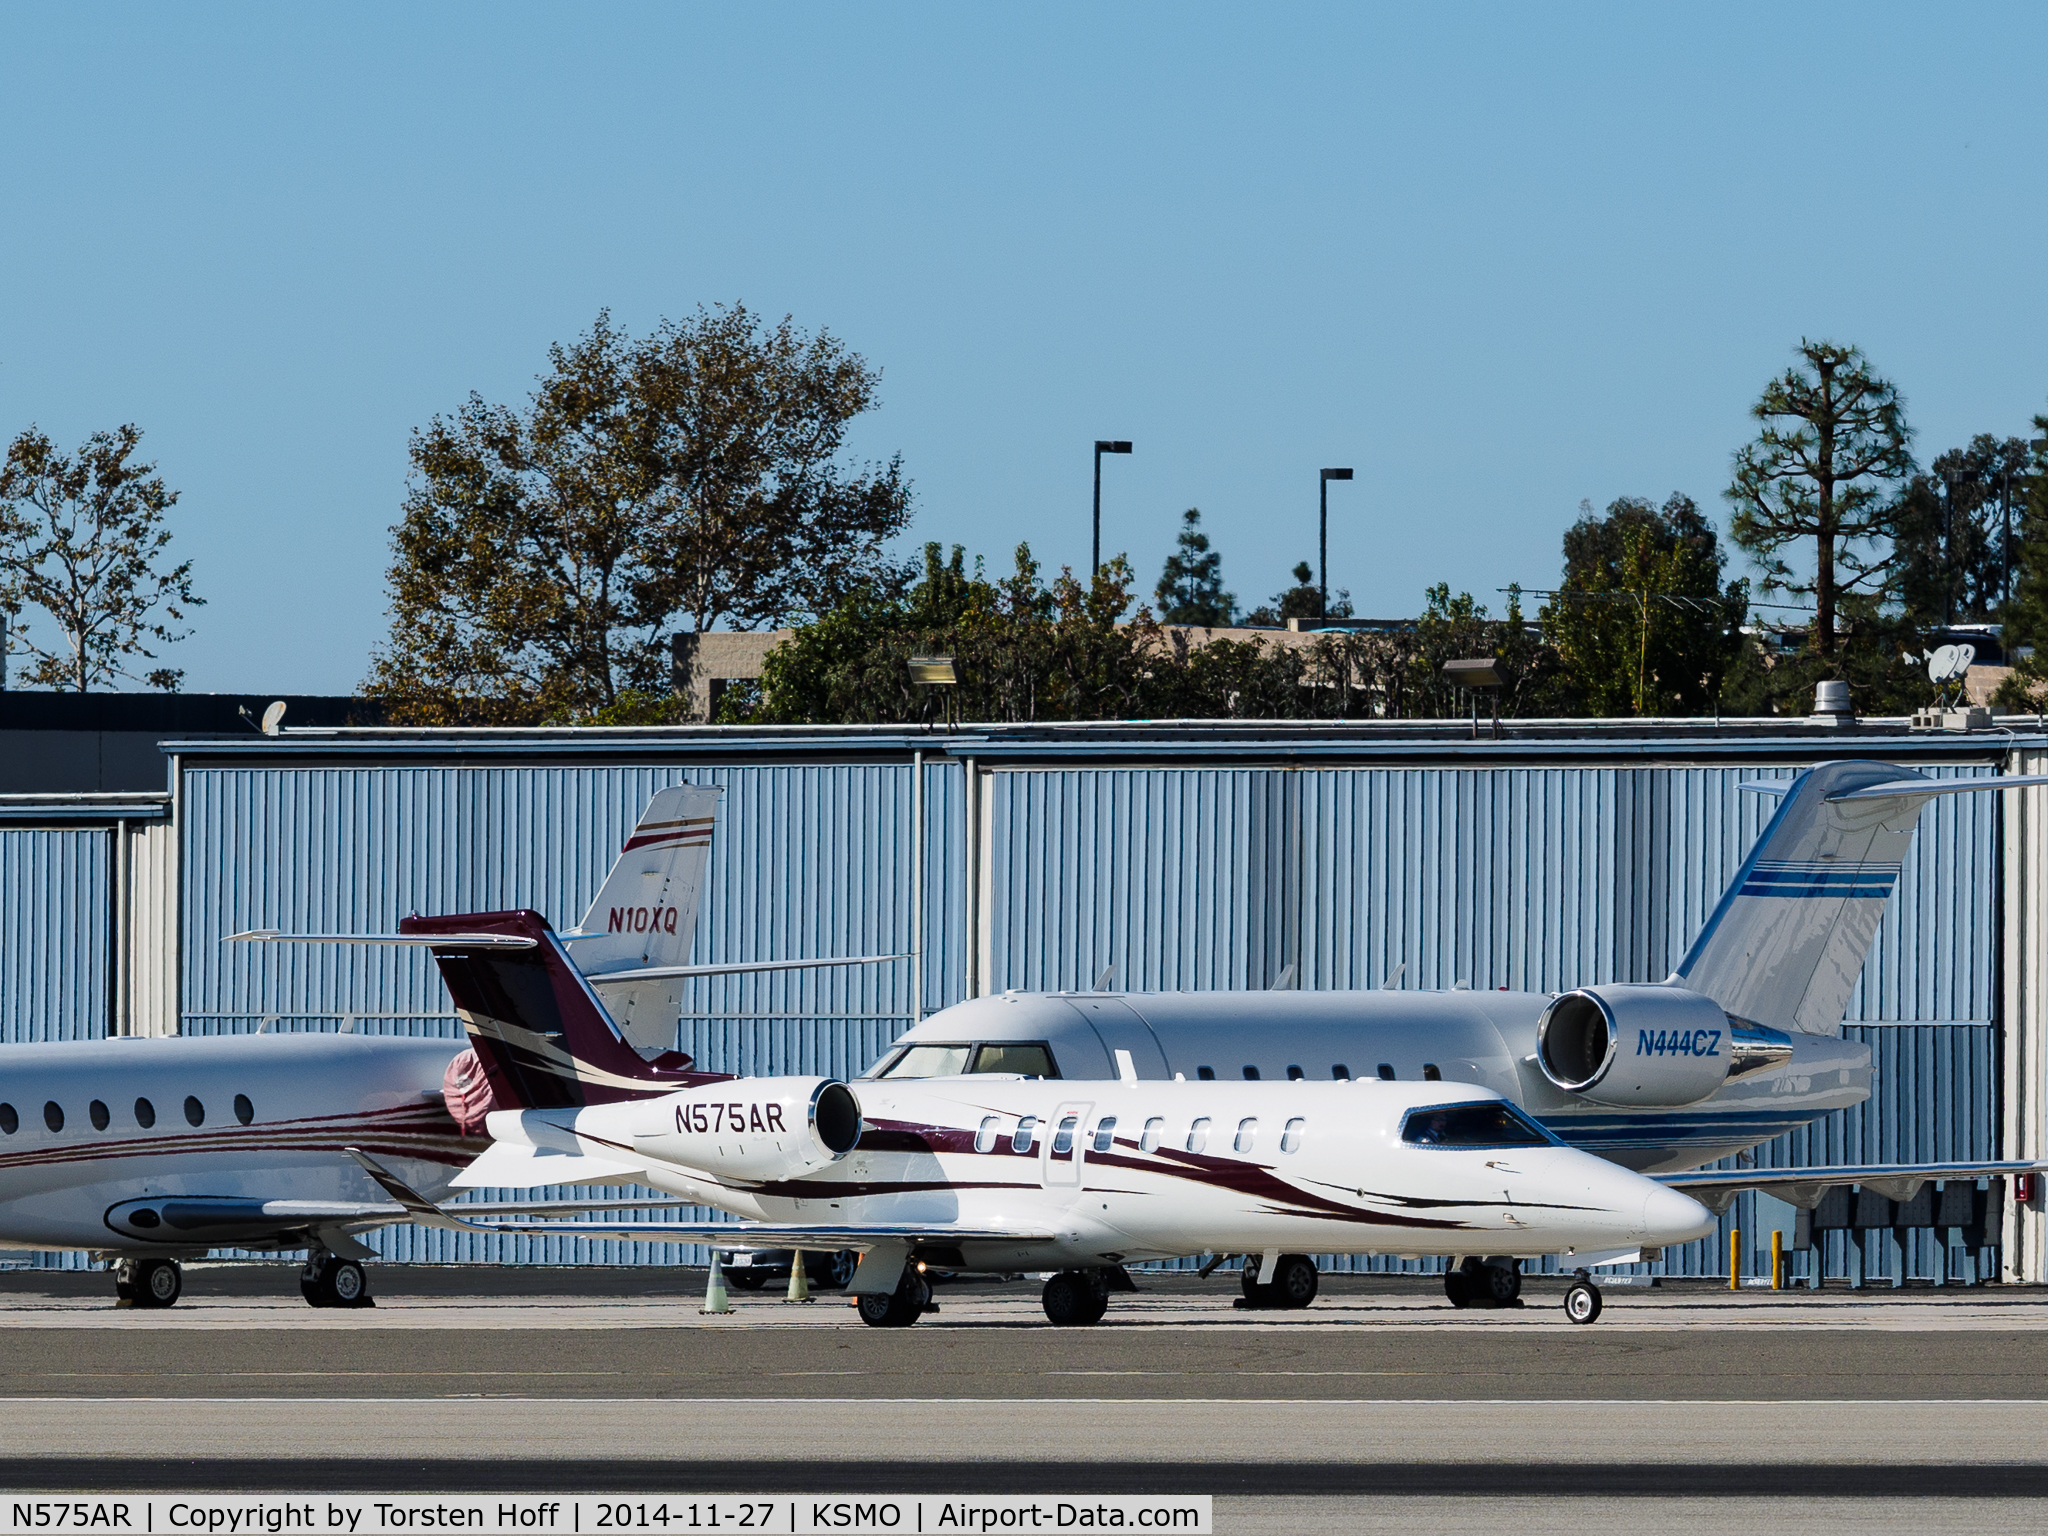 N575AR, 2013 Learjet 45 C/N 458, N575AR taxiing